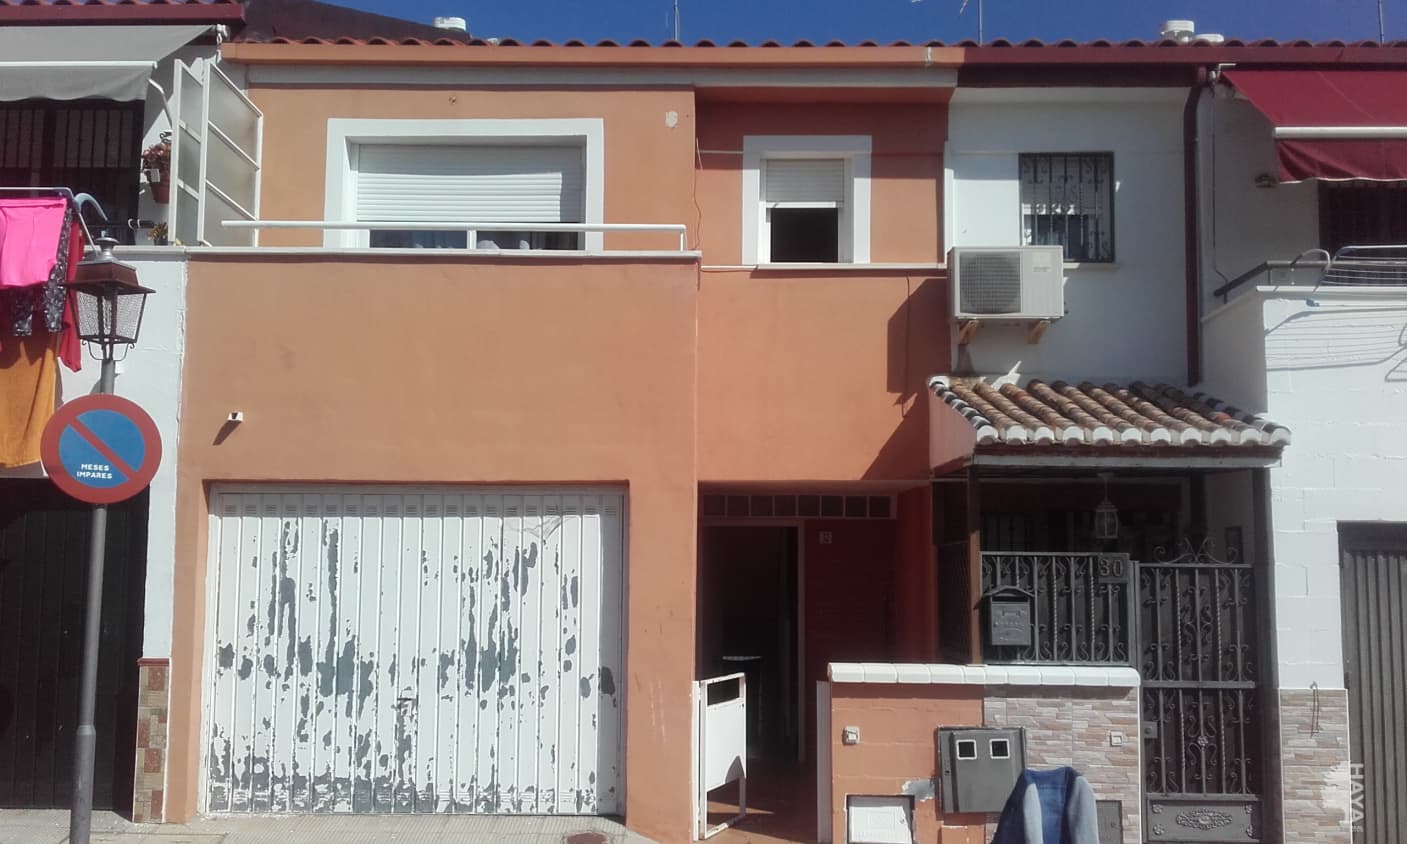 Venta de casas y pisos en Ogíjares Granada